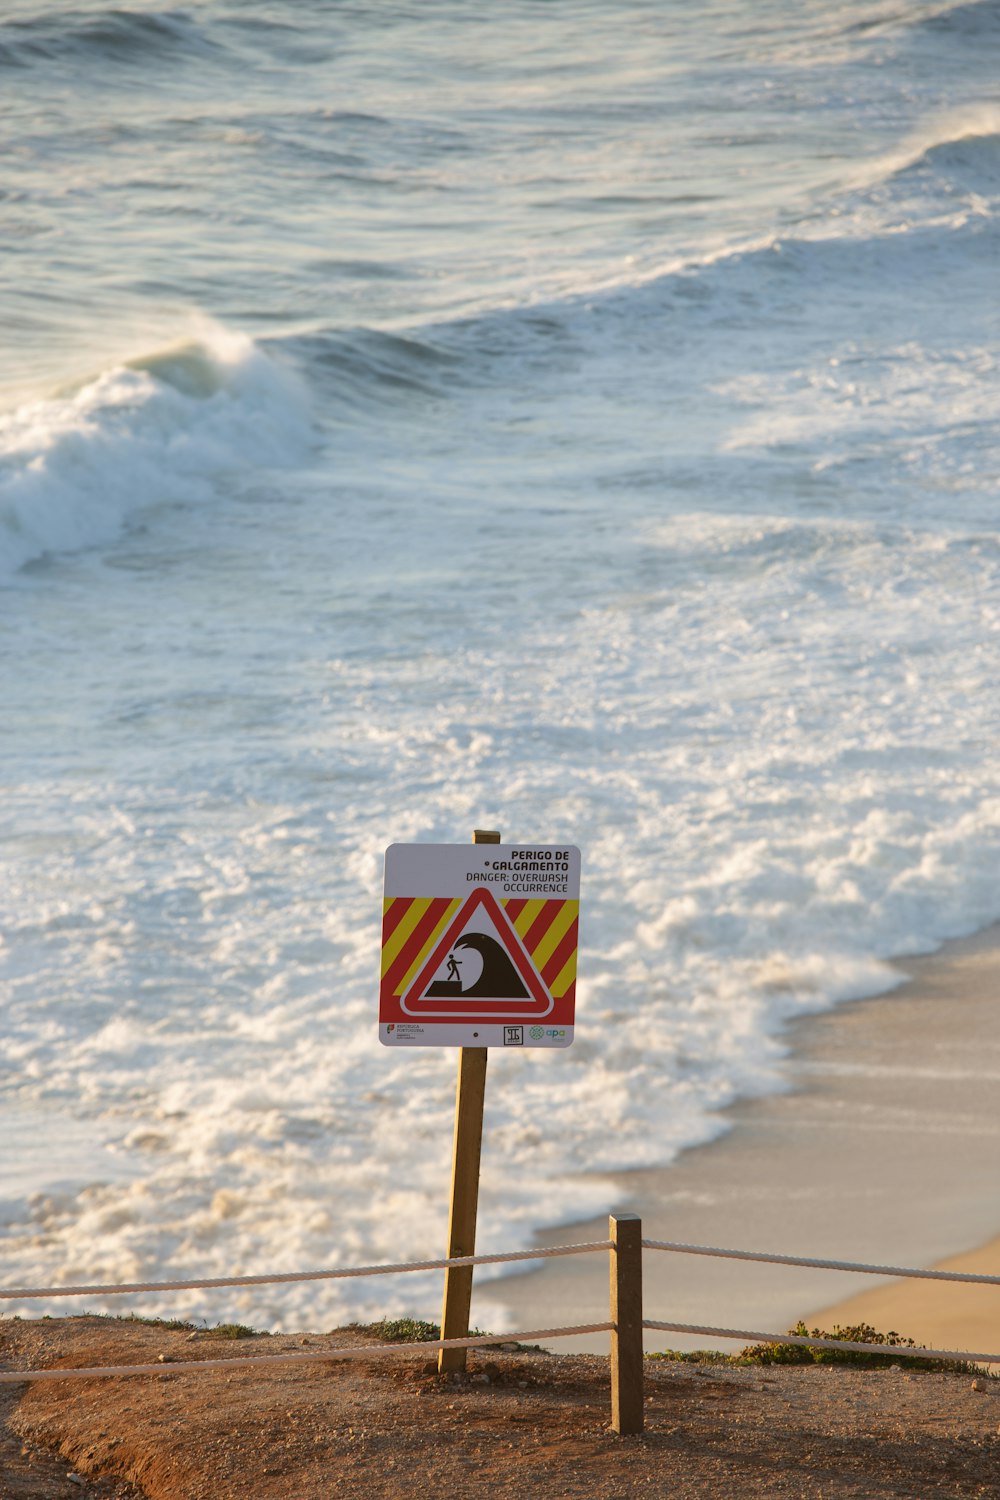 a sign on the beach